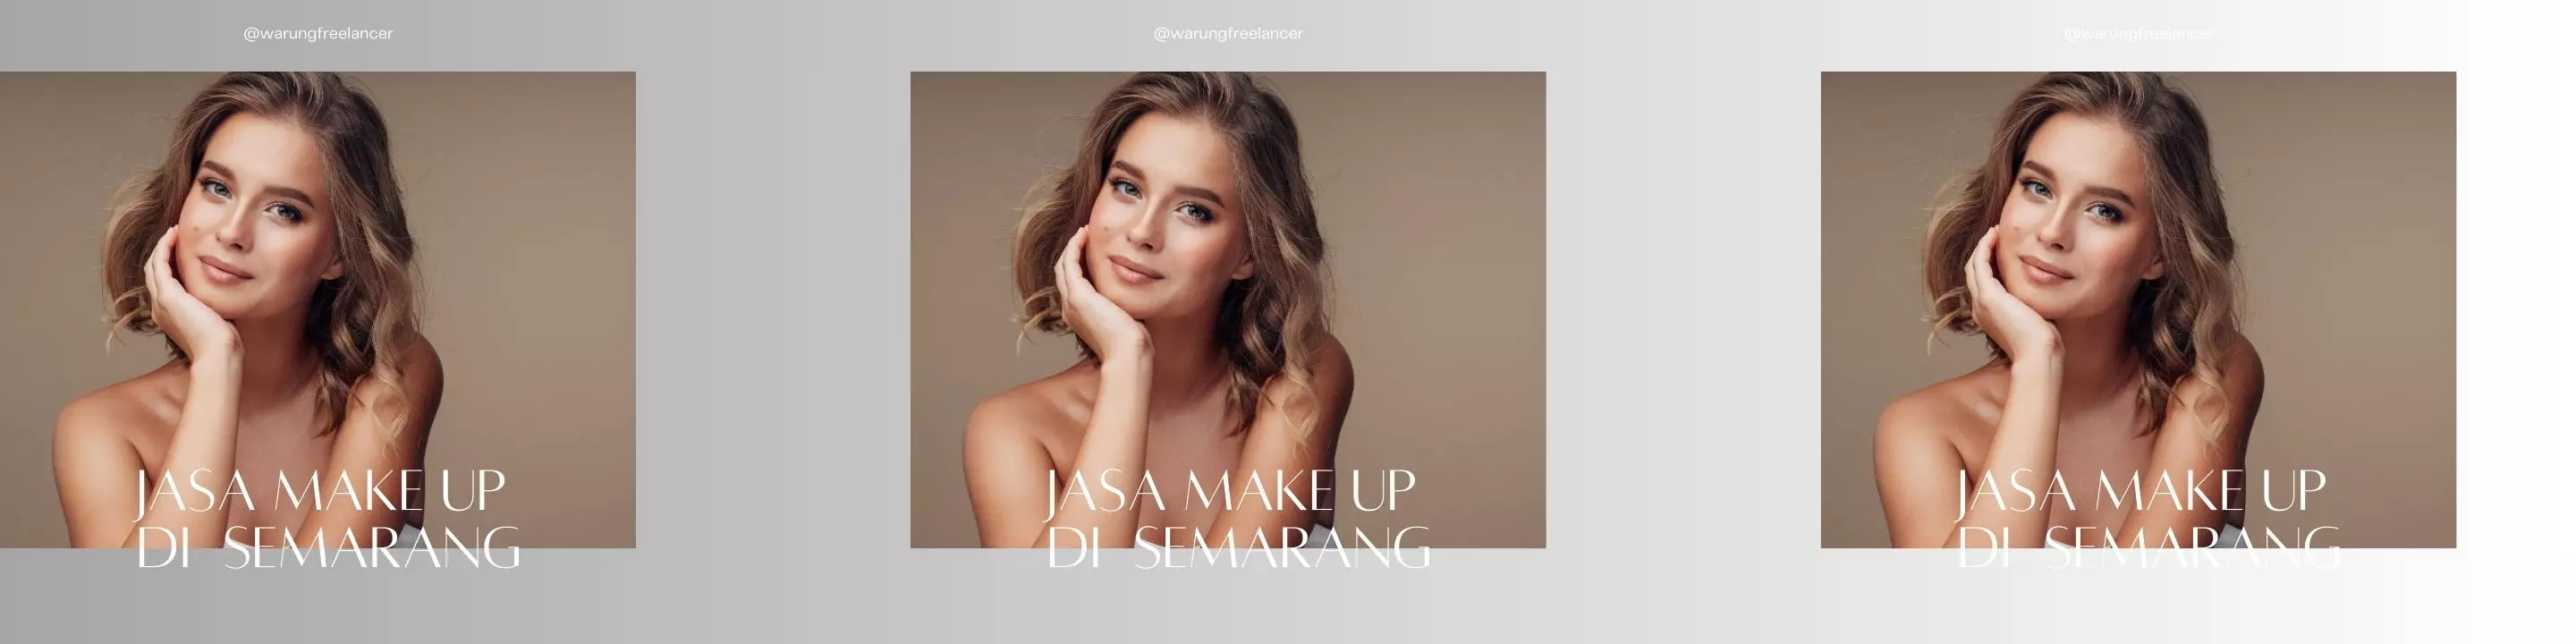 Jasa Make Up di Semarang